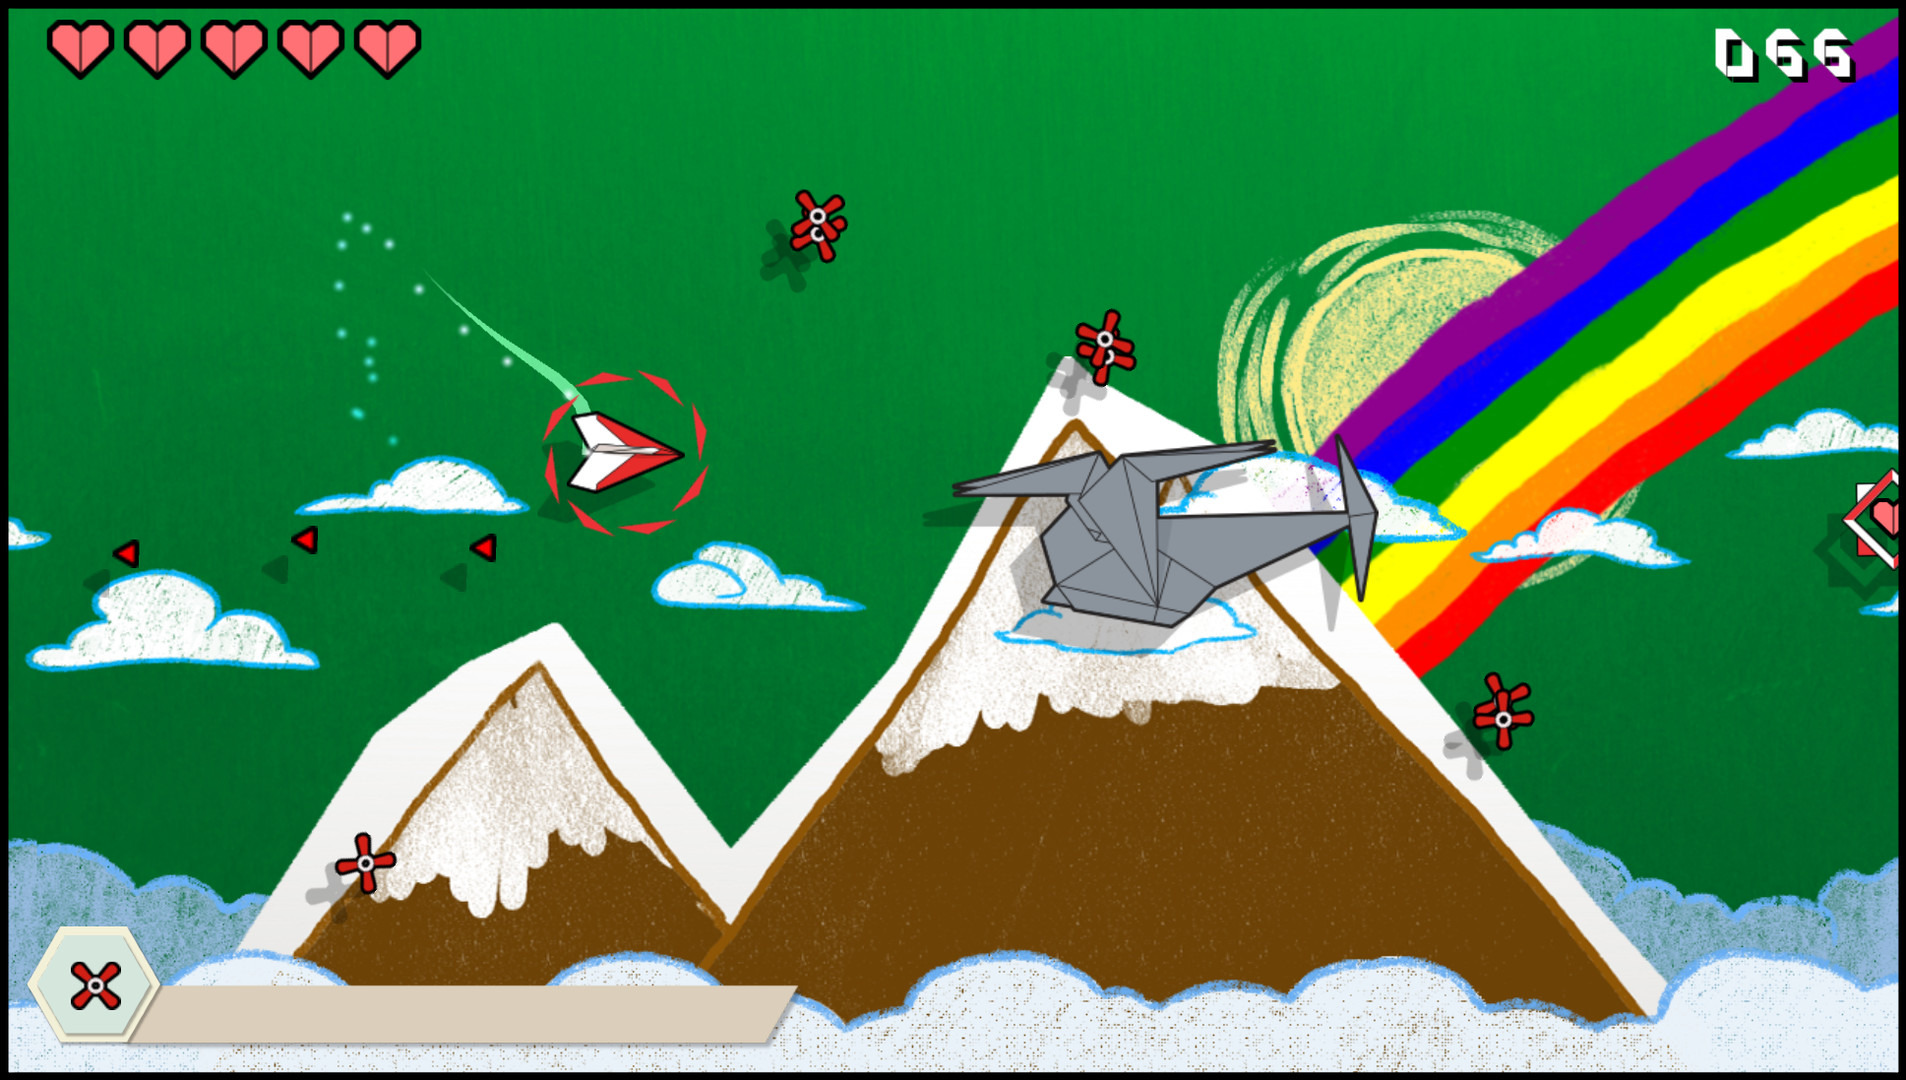 紙飛行機が世界を救う横stg Origami Flight リリース 全てが折り紙の世界へ飛び立ち 折り鶴を救い出せ Game Spark 国内 海外ゲーム情報サイト